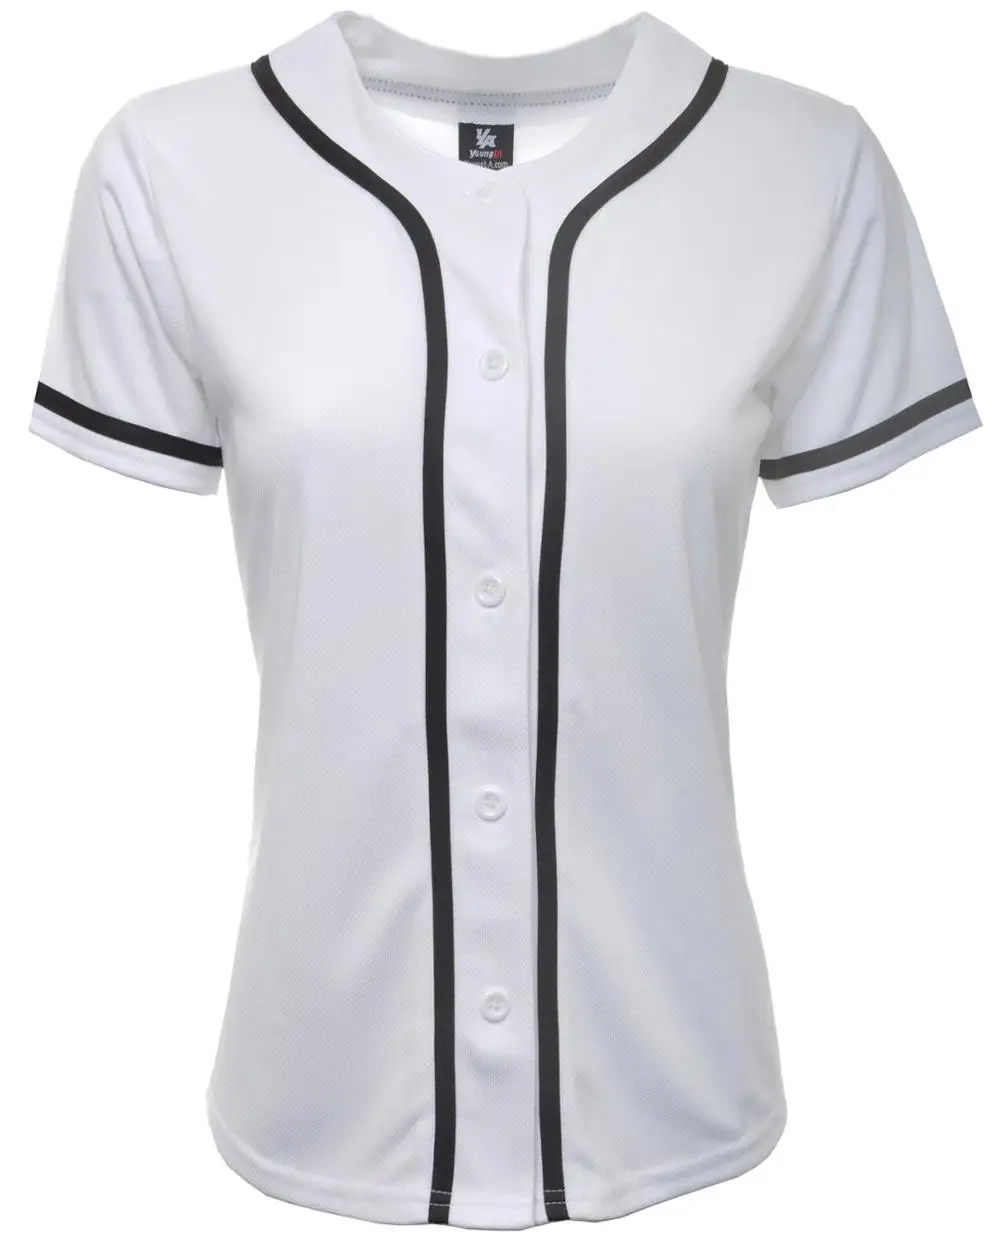 women's baseball jersey shirts